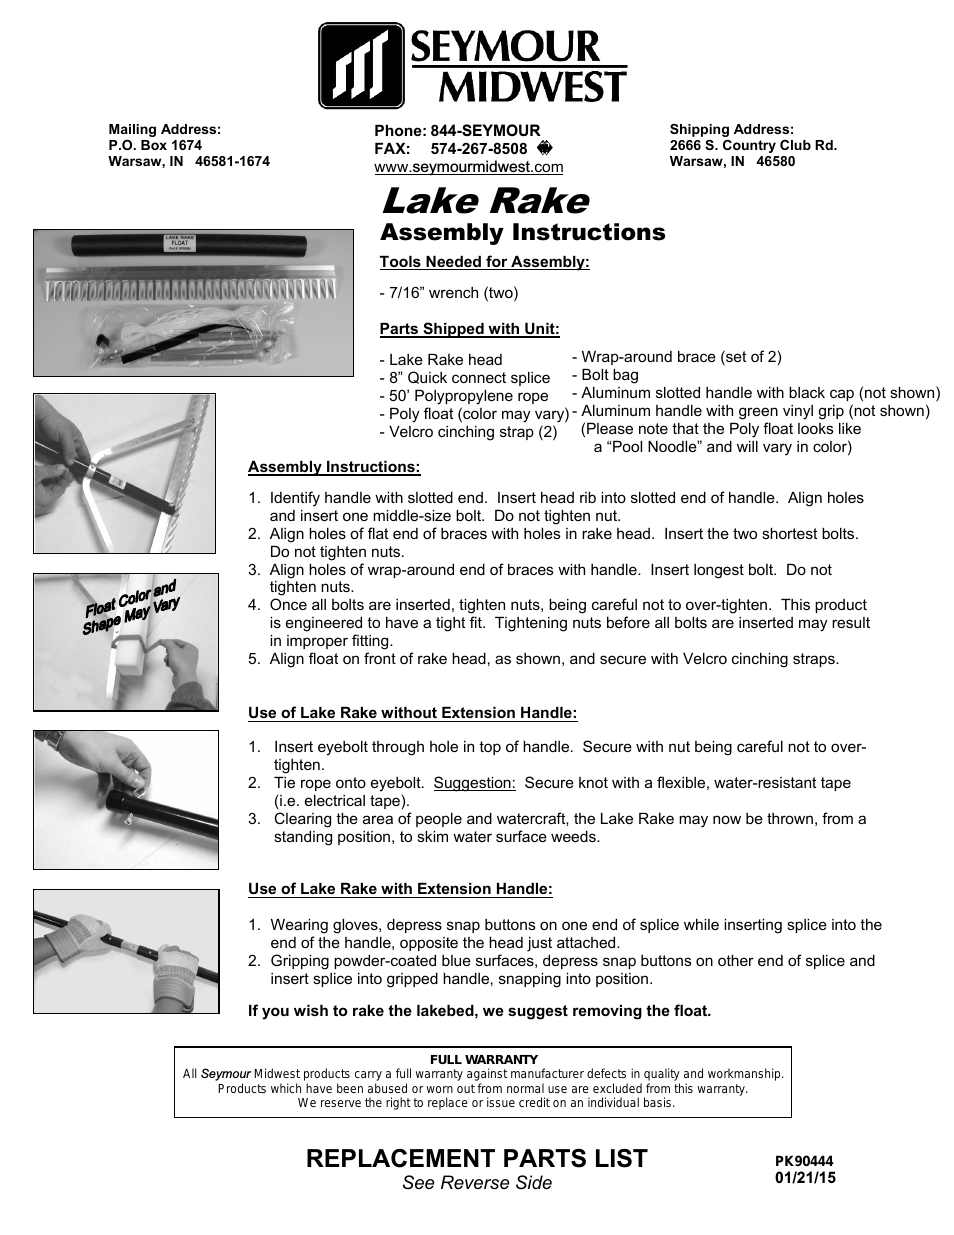 Lake Rake(PK90089)